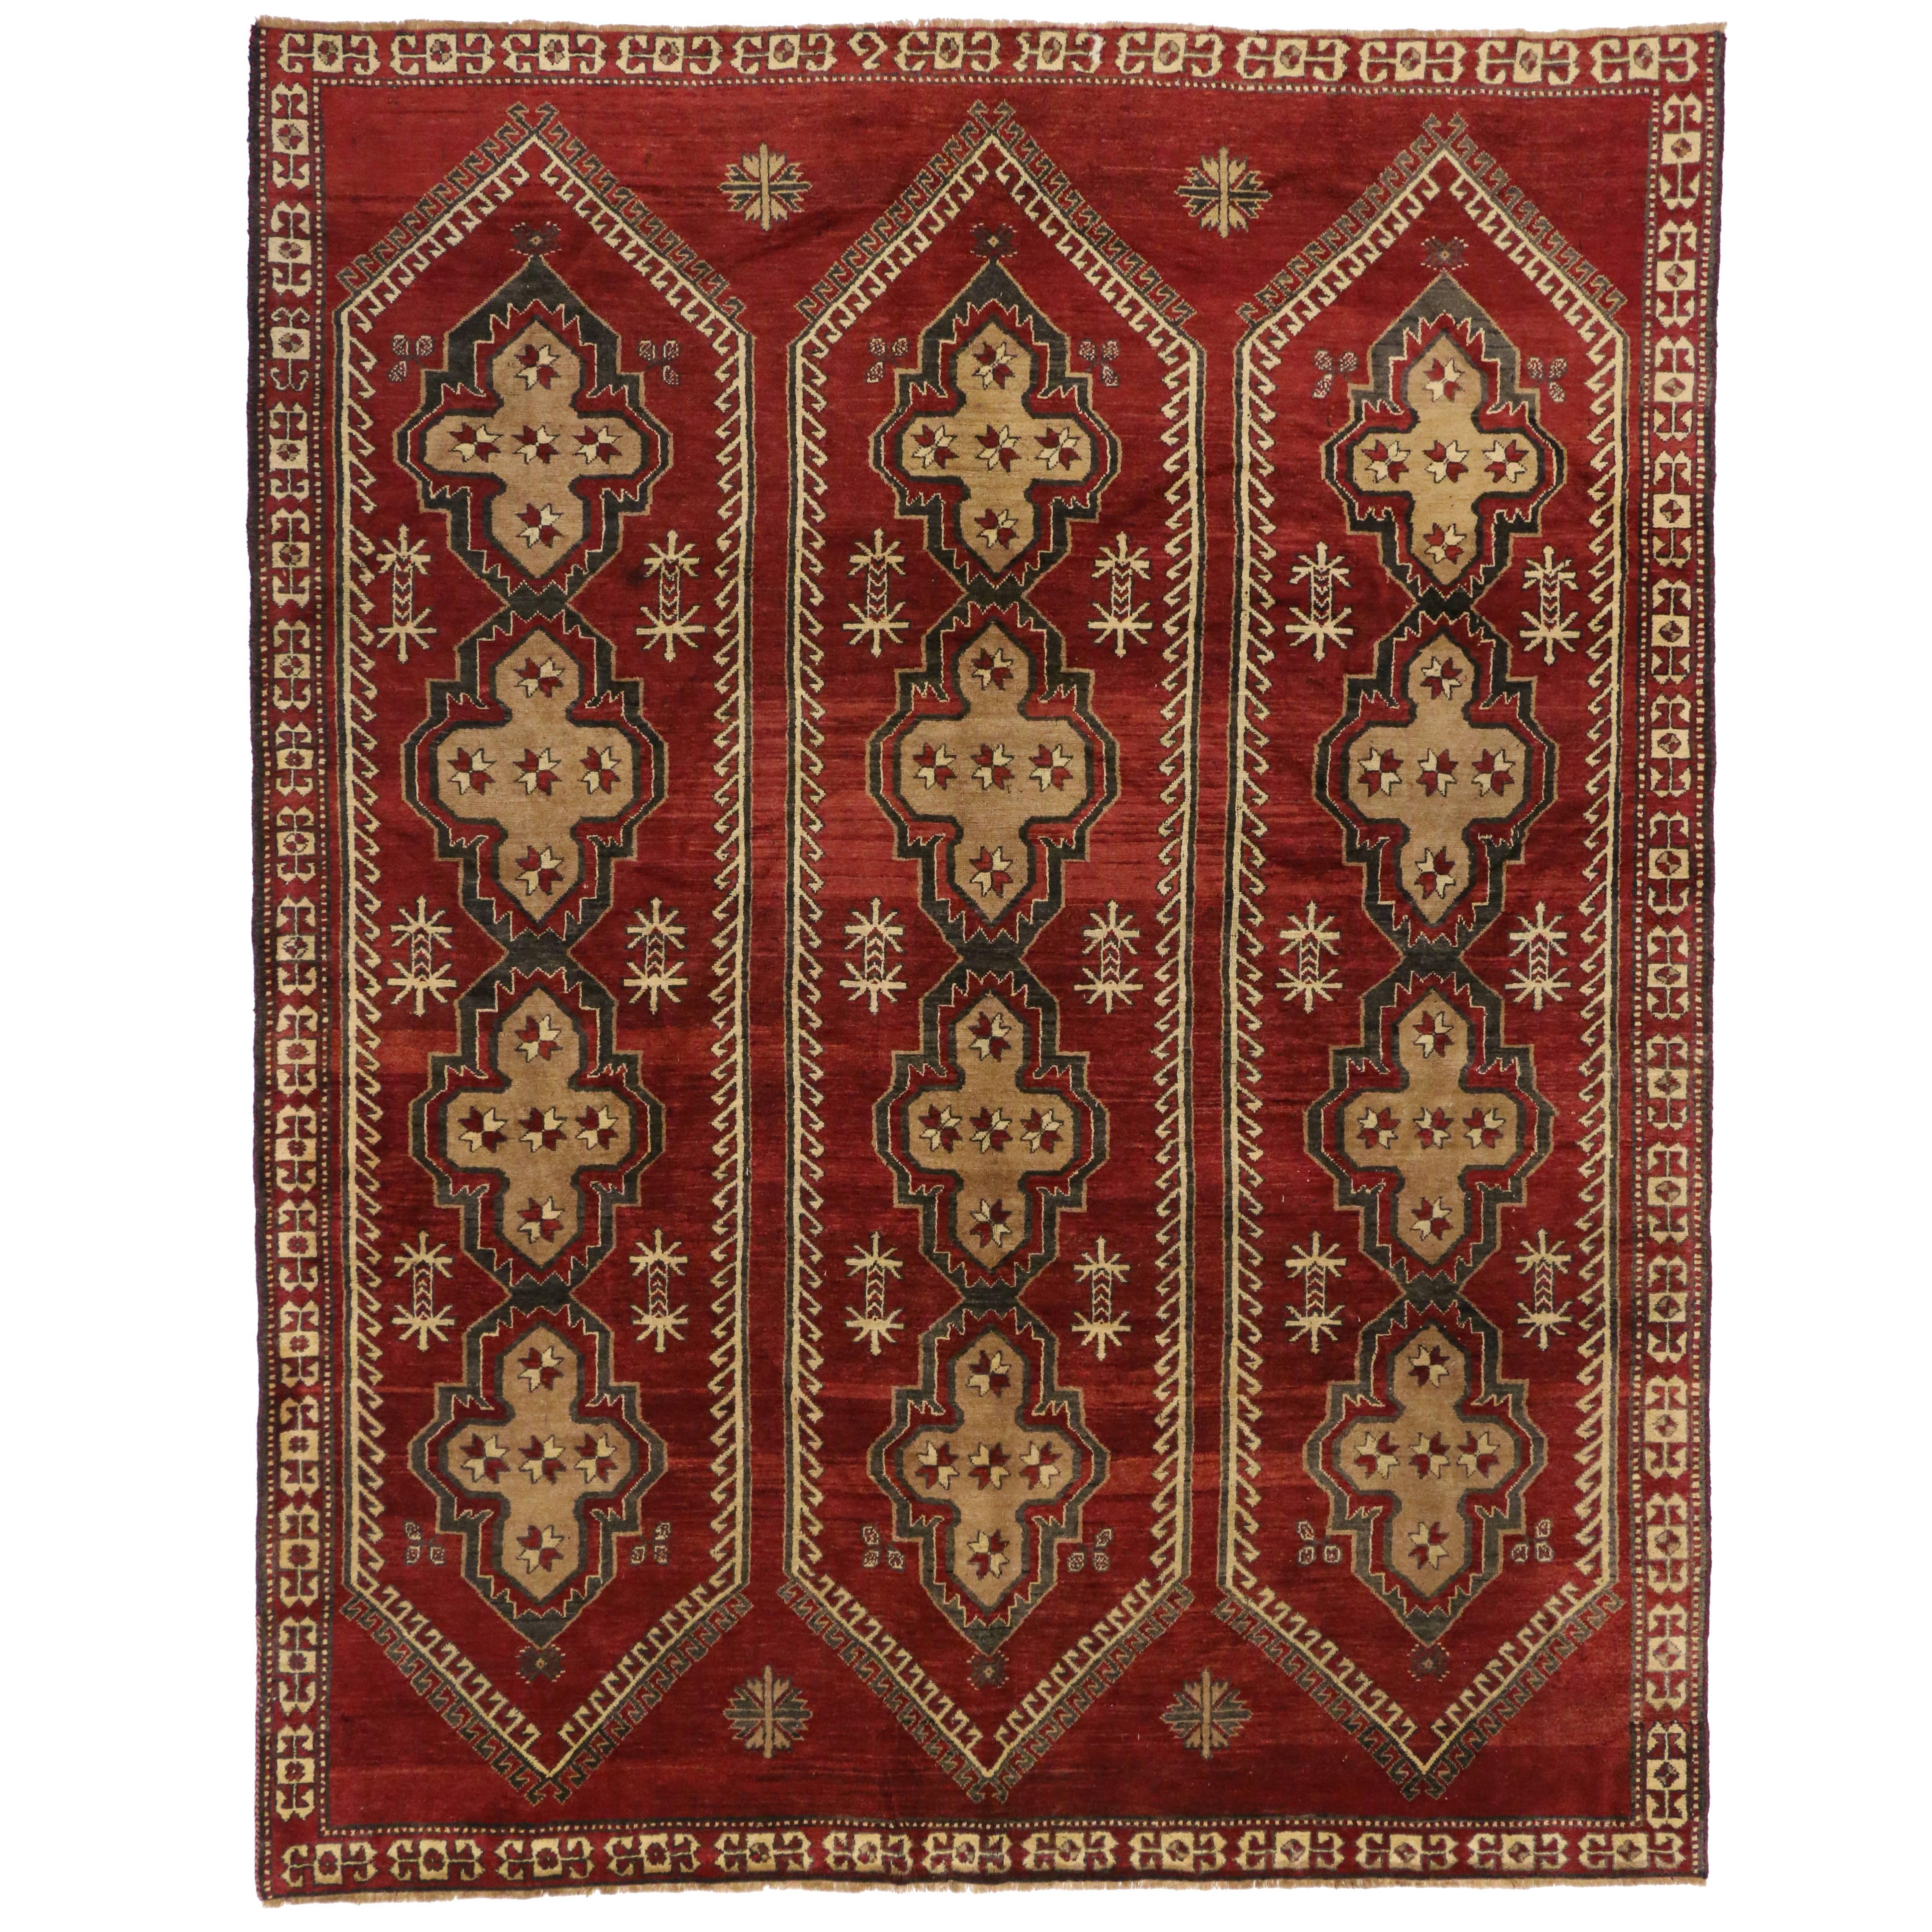 Türkischer Oushak-Teppich im modernen, mittelalterlichen Elizabethan-Stil im Vintage-Stil